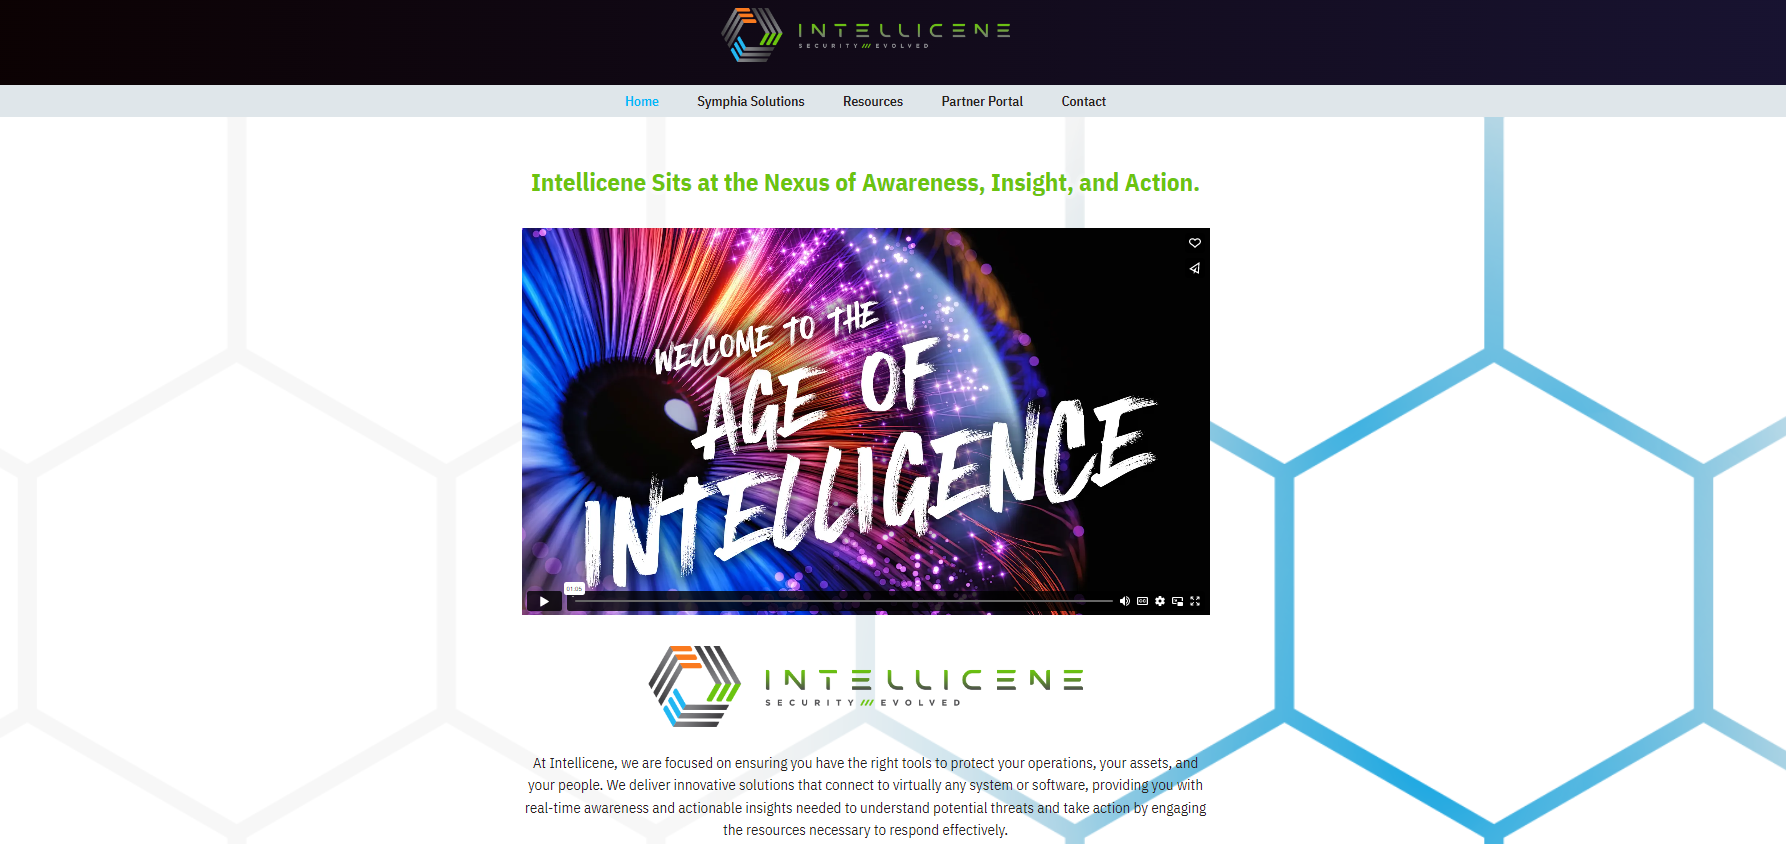 Ace_of_intelligence